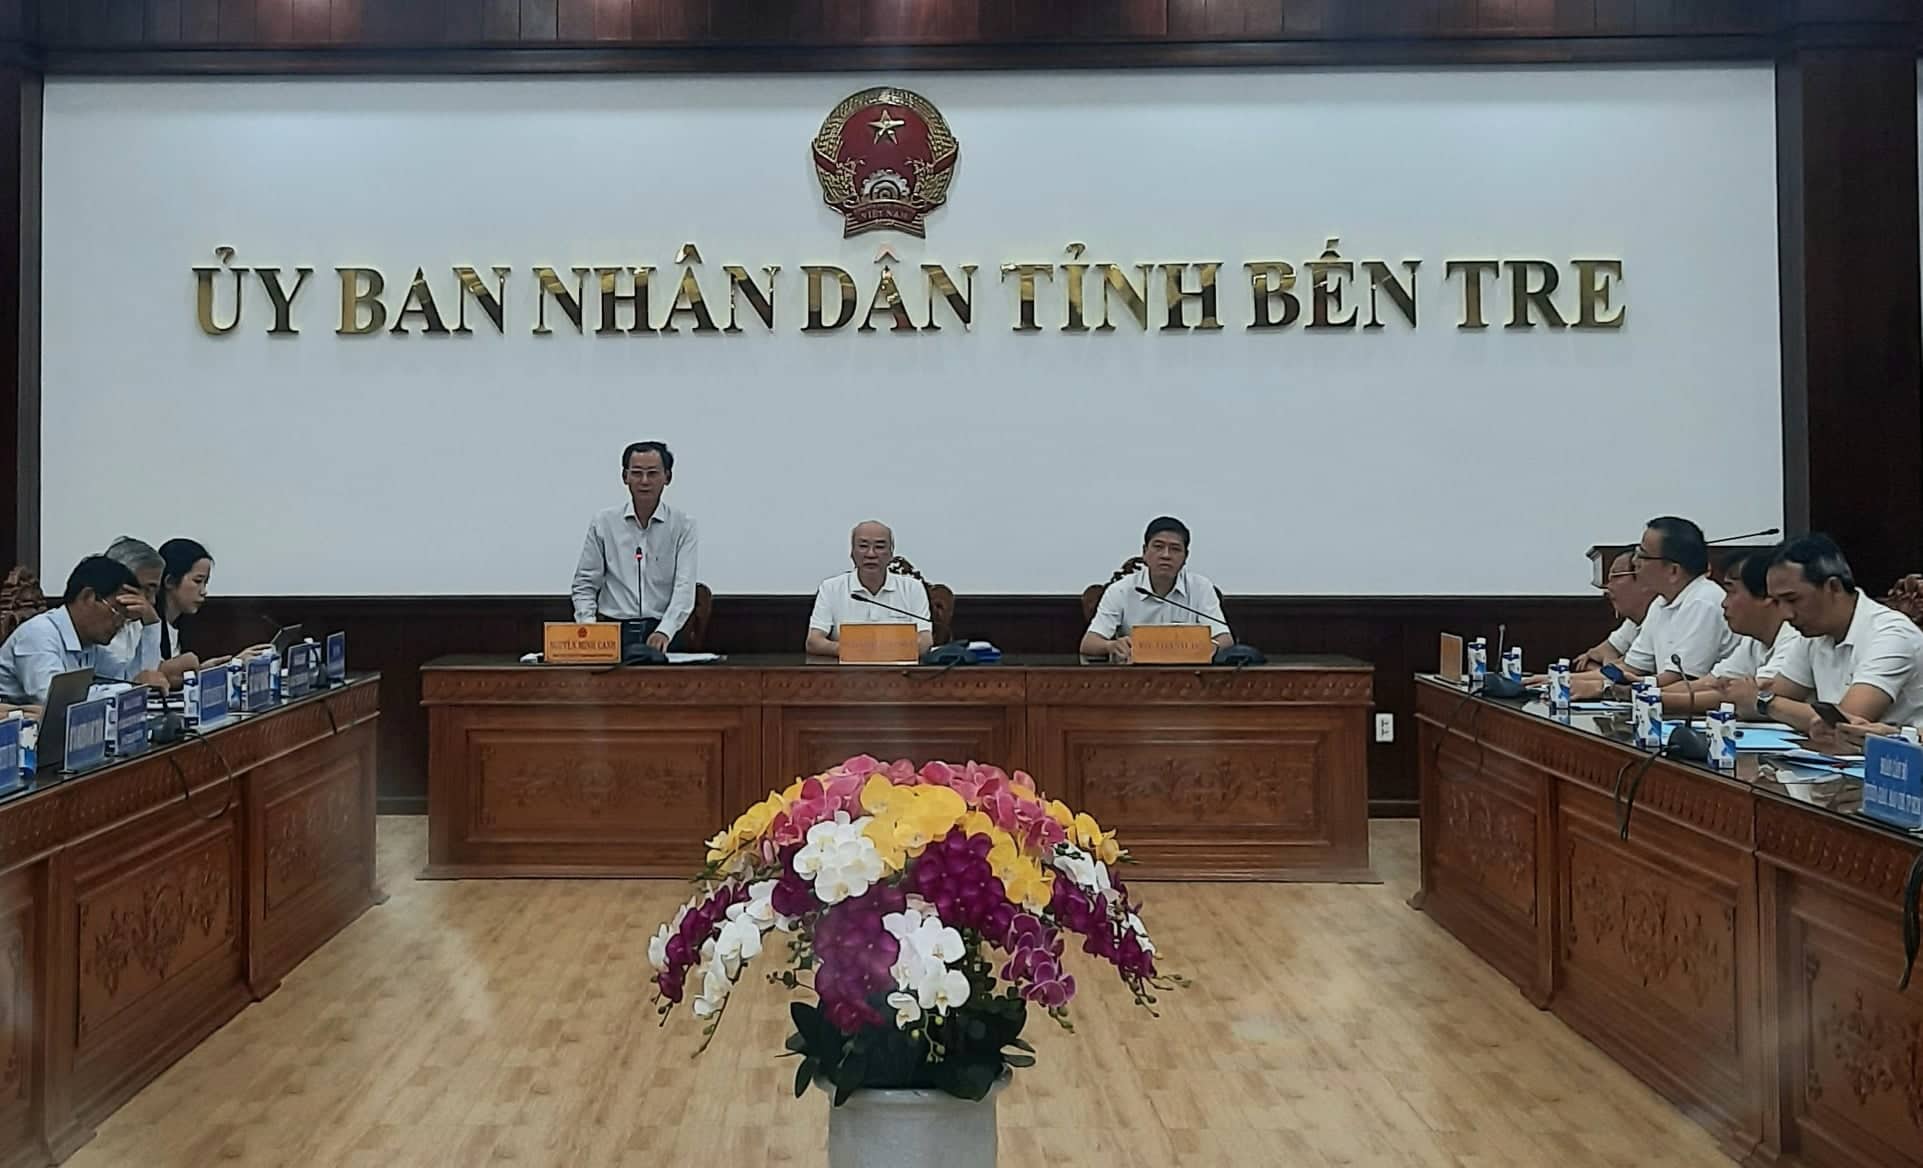 Đồng chí Nguyễn Minh Cảnh - Phó Chủ tịch UBND tỉnh Bến Tre thông tin đến đoàn về tình hình kinh tế - xã hội tỉnh Bến Tre